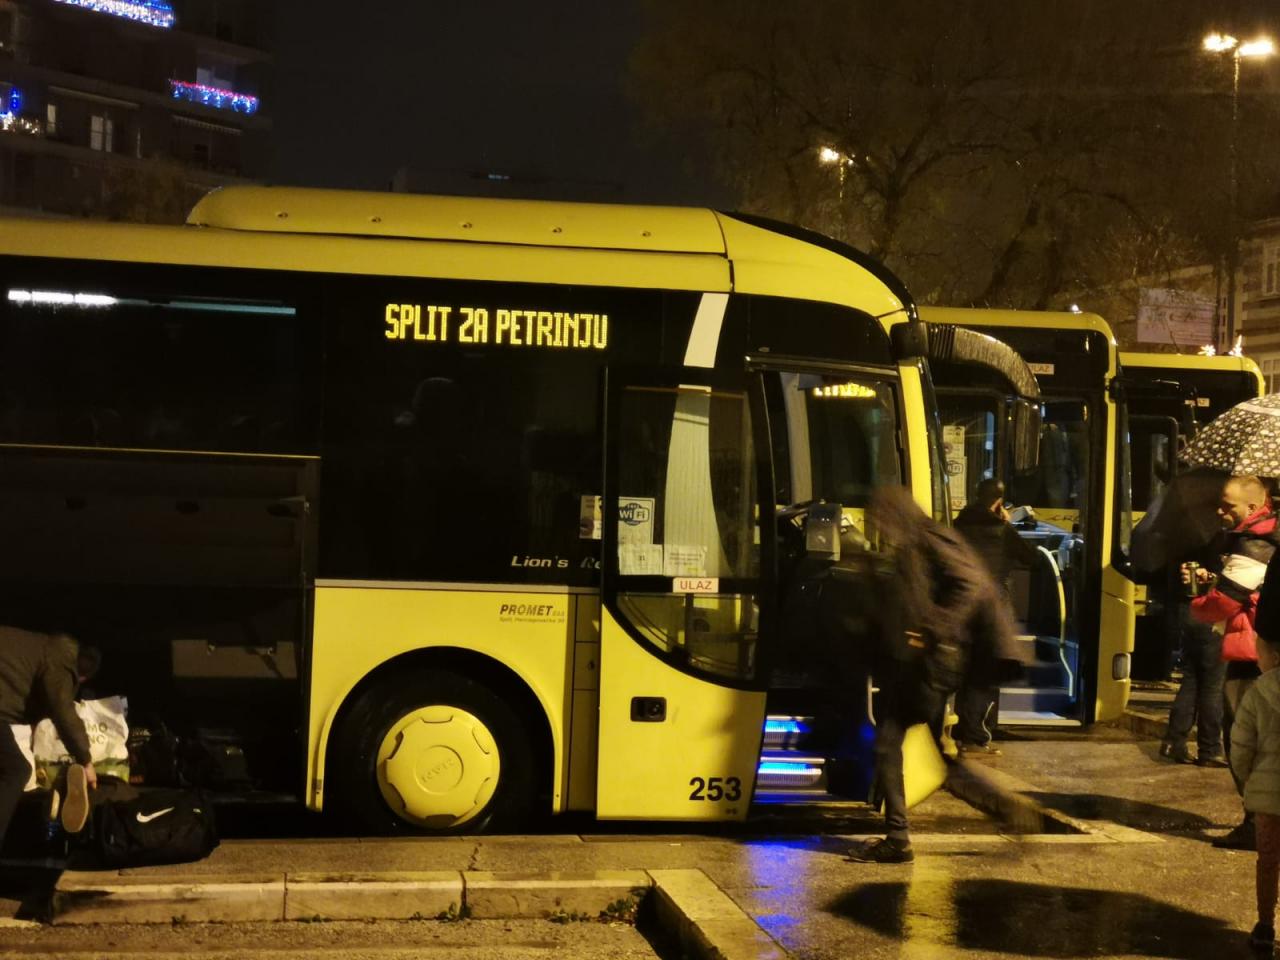 PROMET Torcidi osigurao tri autobusa da krenu prema Petrinji